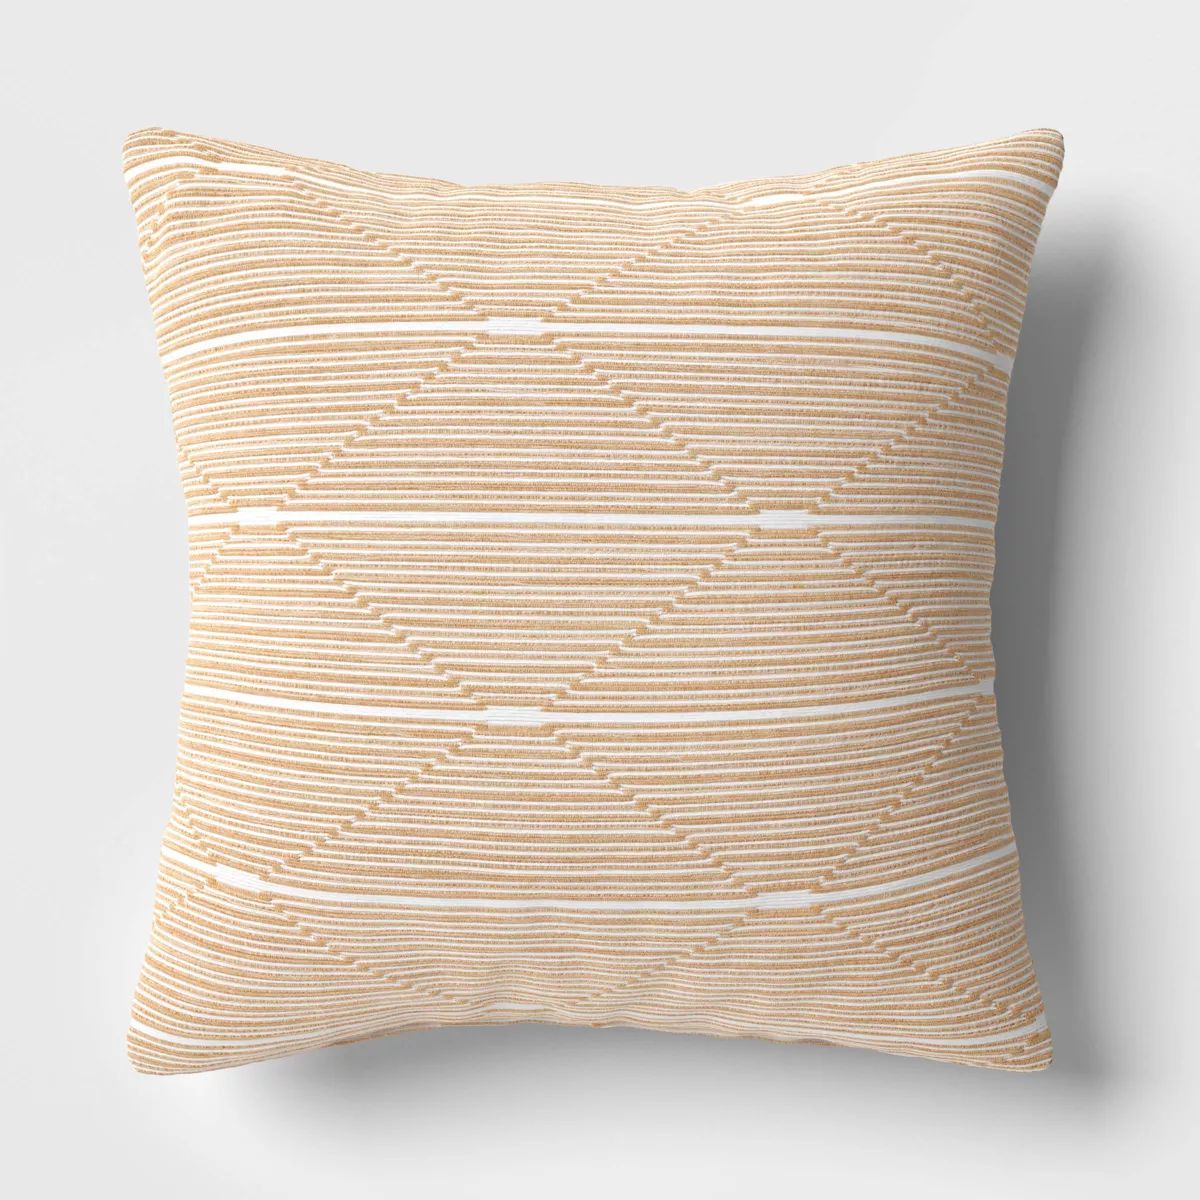 18"x18" Diamond Stripe Square Outdoor Throw Pillow Tan - Threshold™ | Target